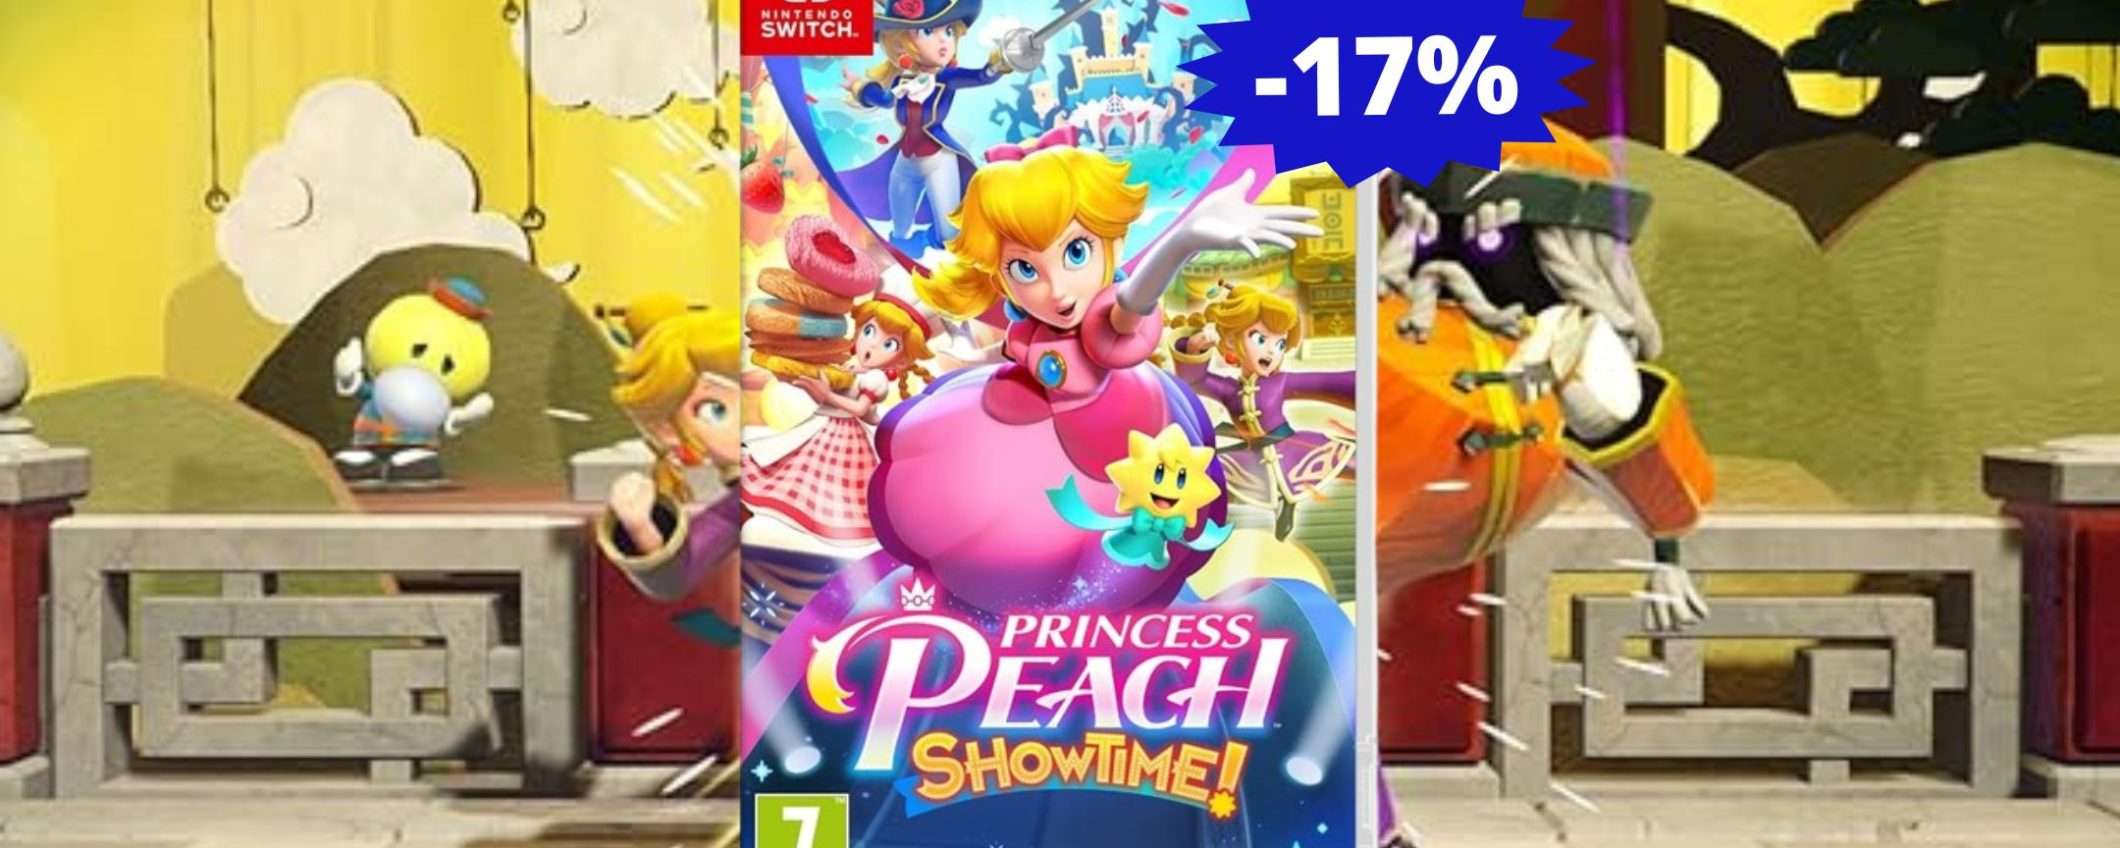 Princess Peach Showtime: un'AVVENTURA epica, esclusiva per Nintendo